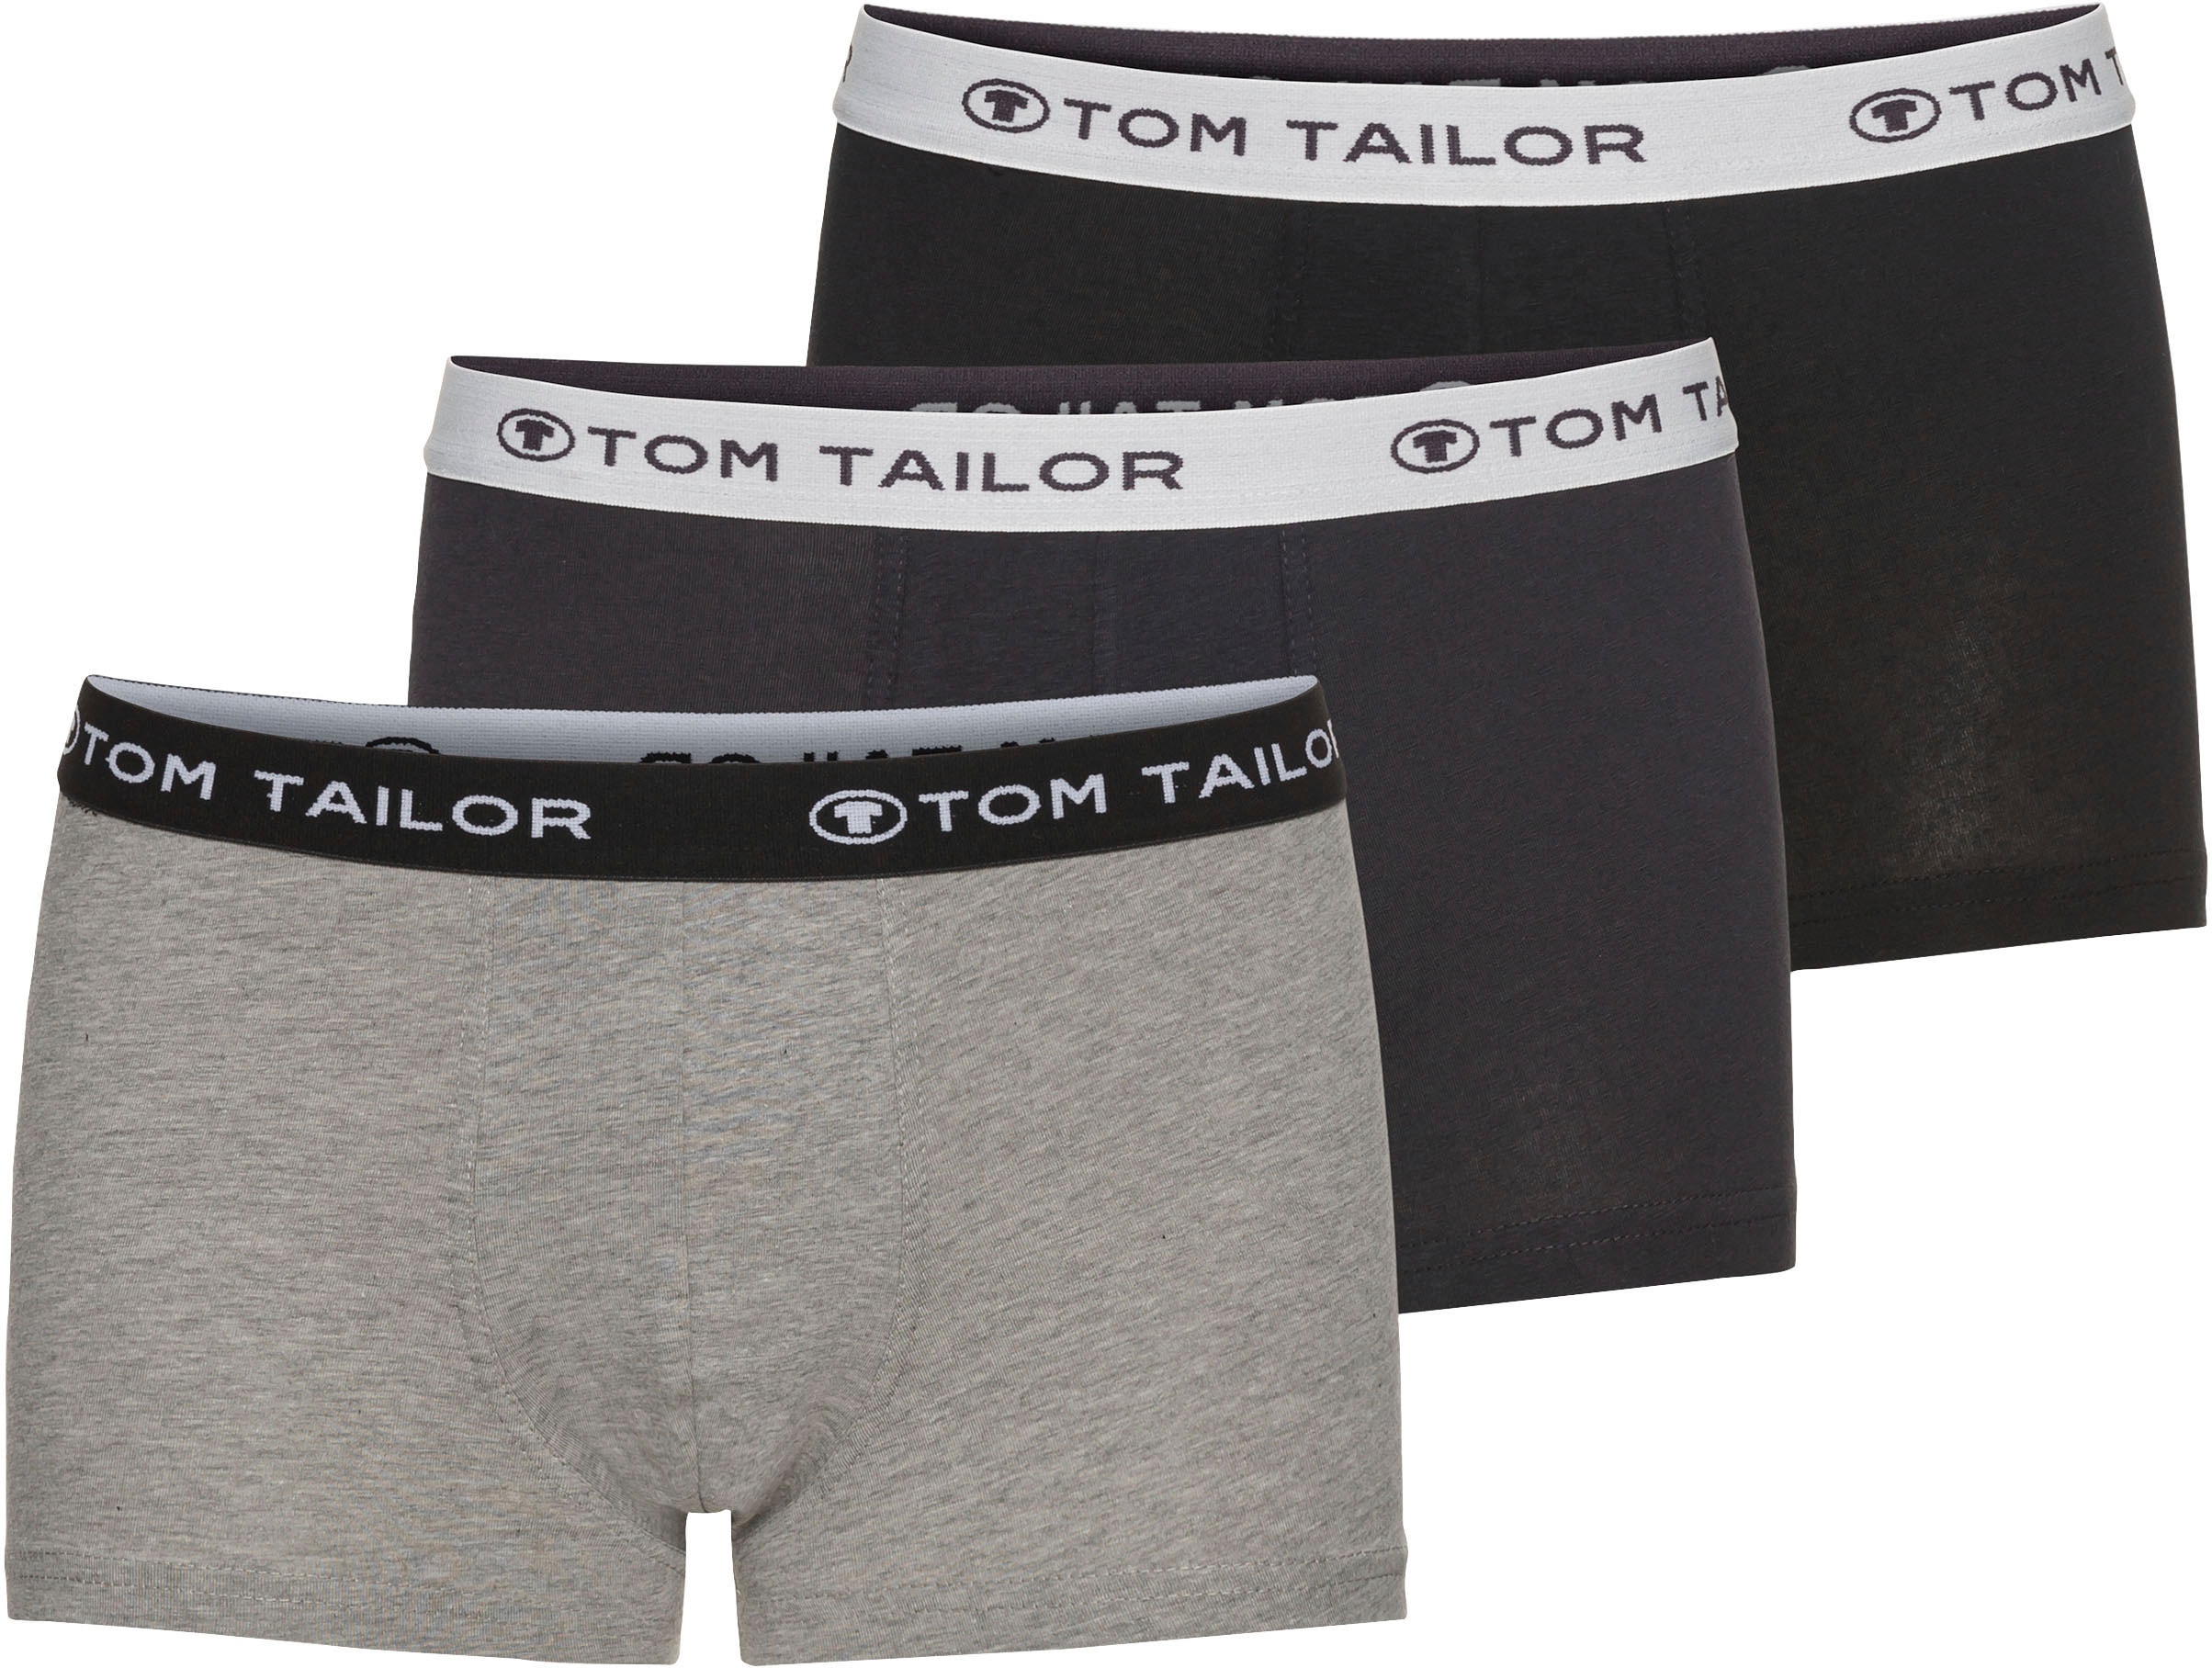 TOM TAILOR Herren Hip Pants Boxershorts 6er Pack - Anthra-Melange-Black (9300) - L